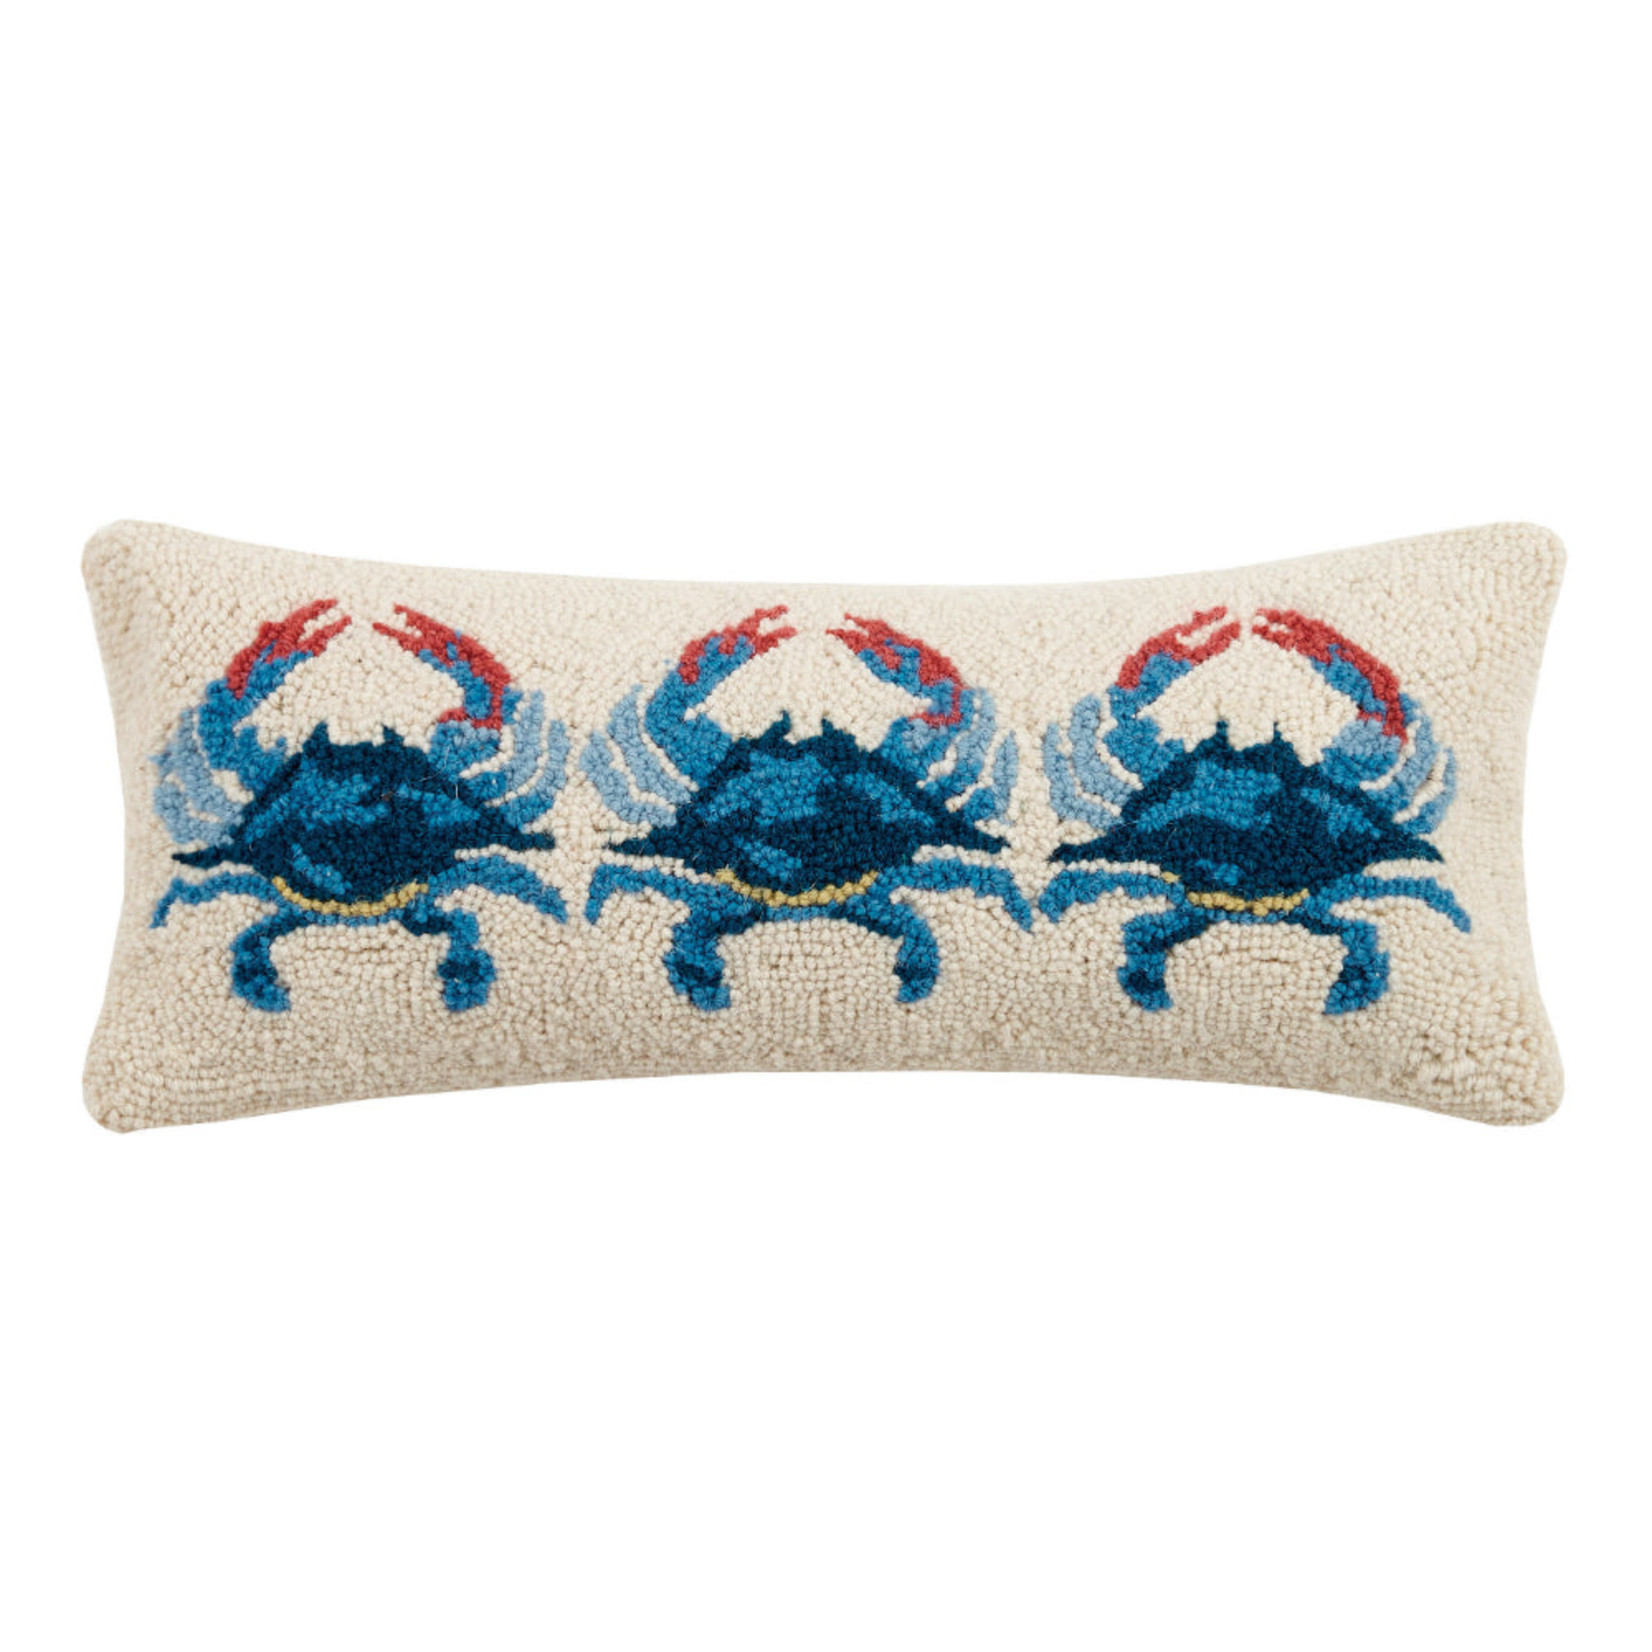 Peking Handicraft Blue Crab 3 Hook Pillow 8x20